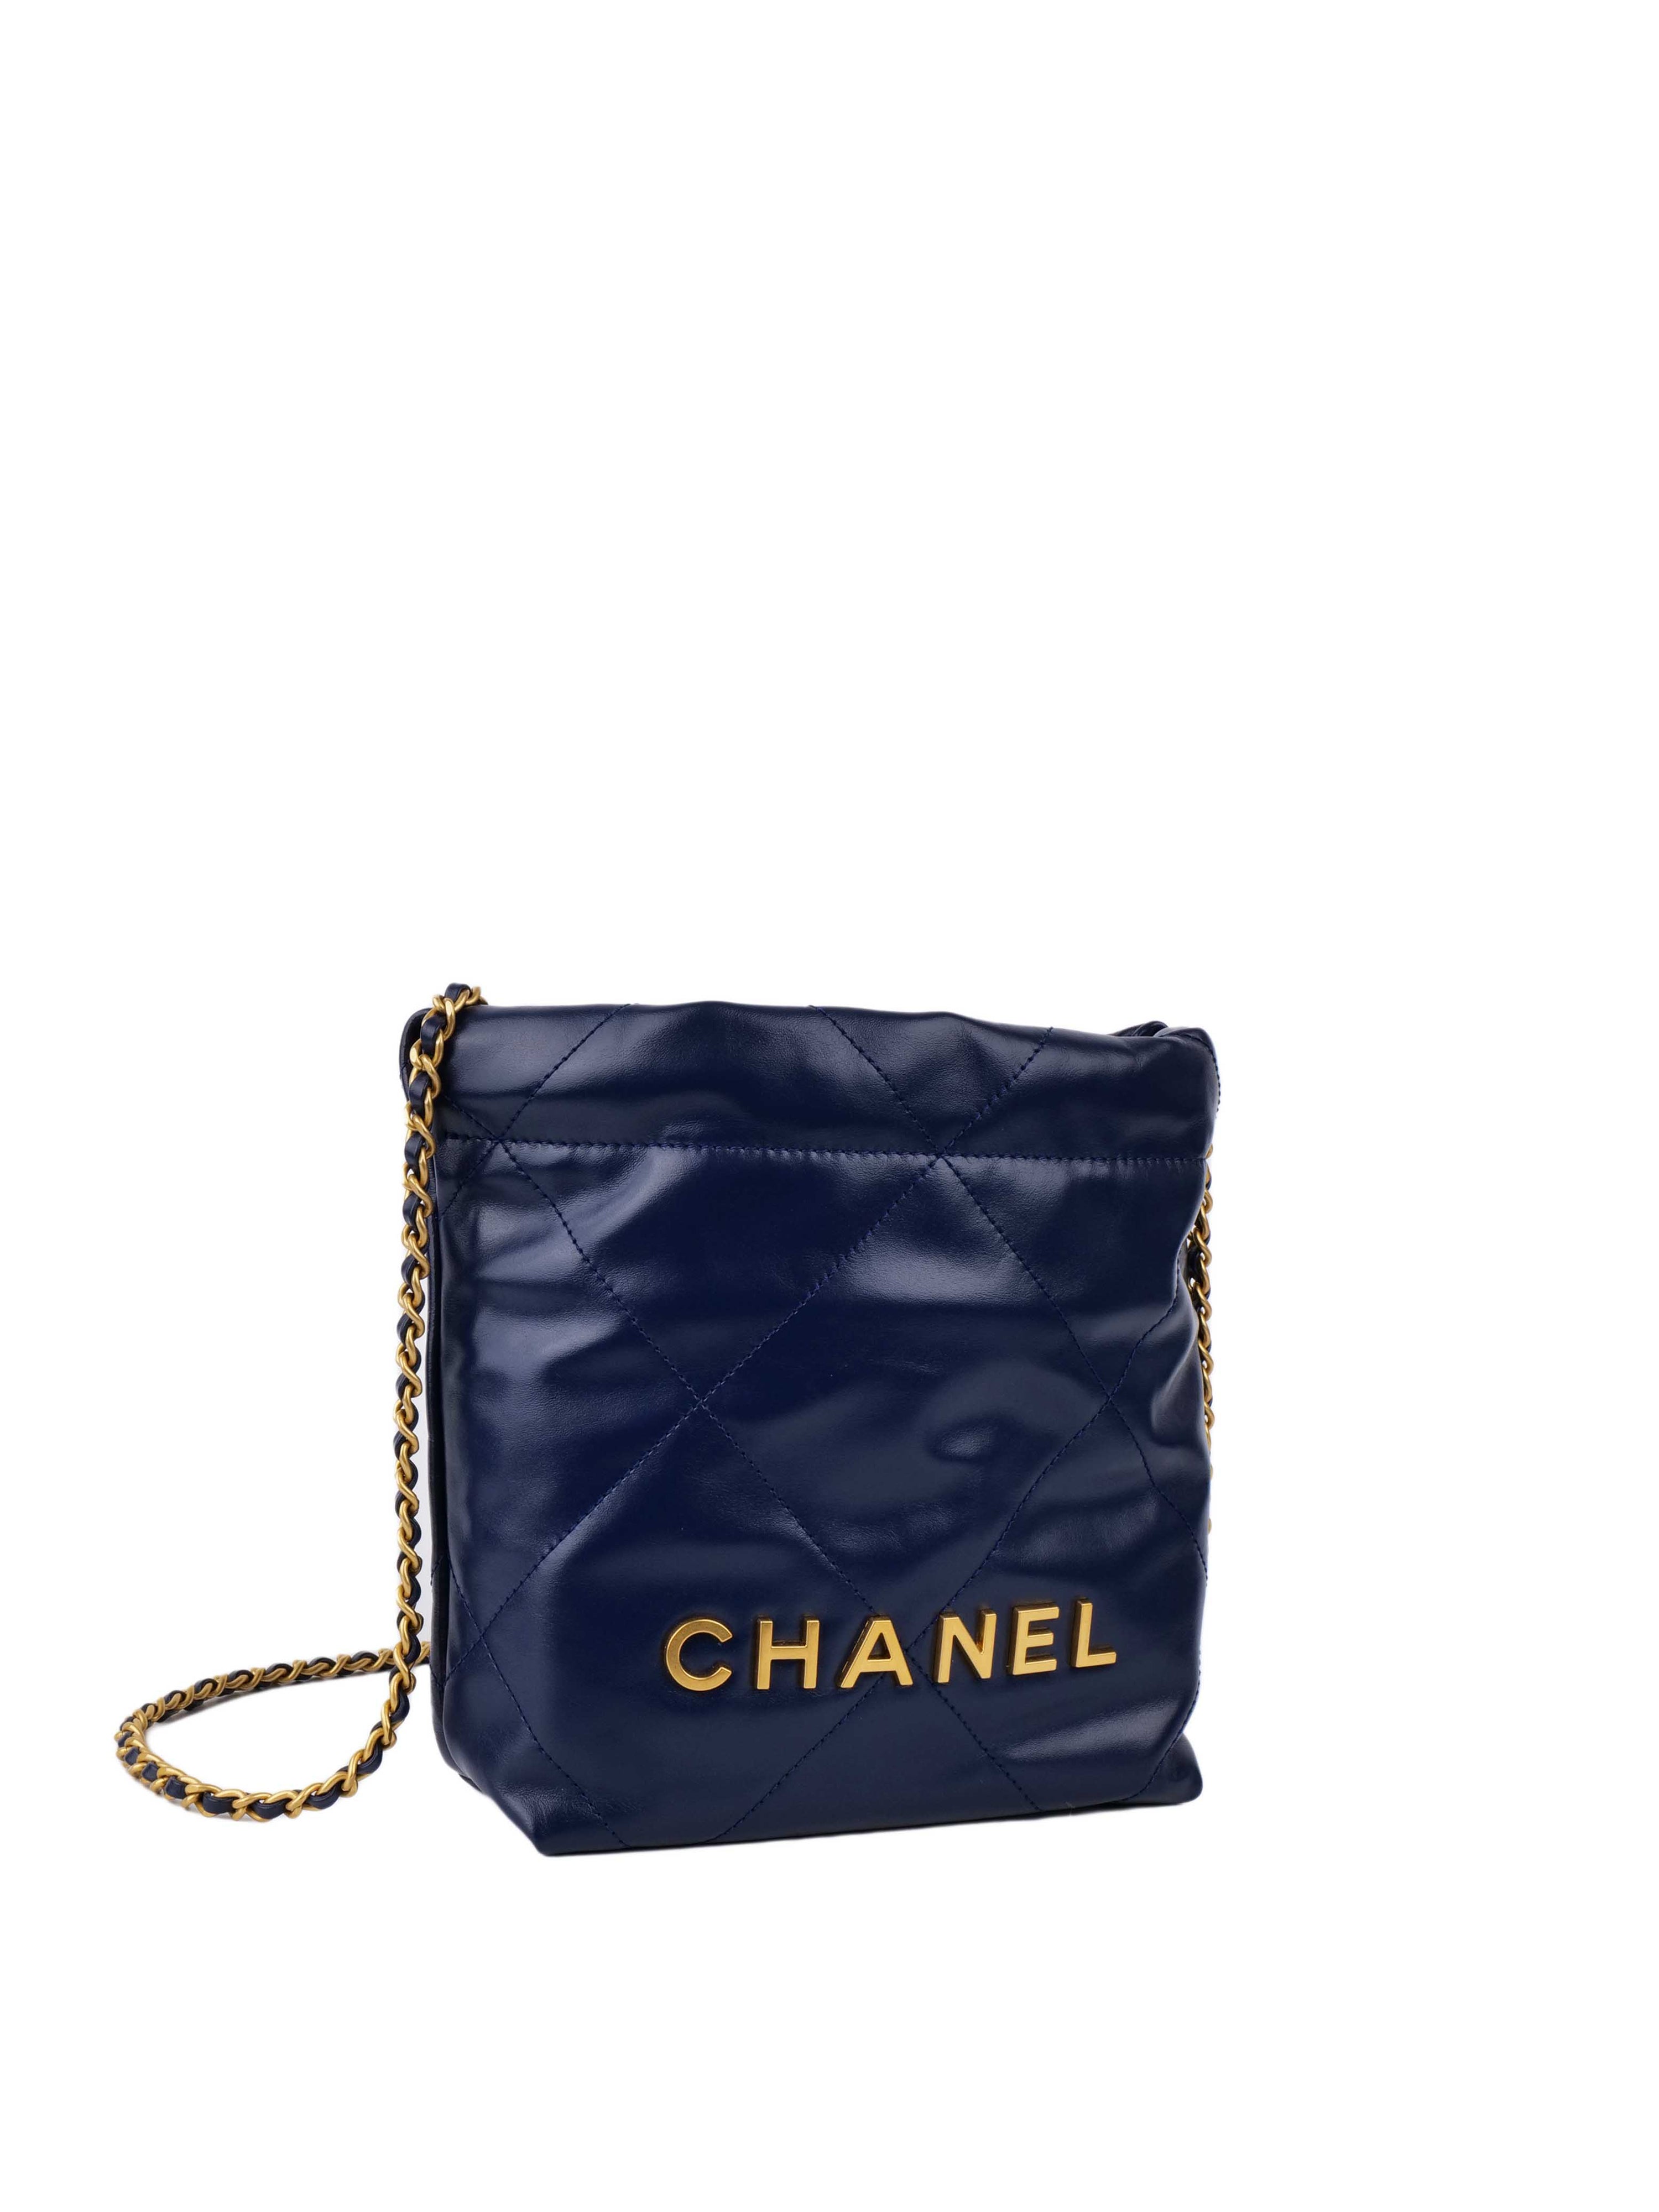 Chanel 22 Navy Mini Shoulder Bag.